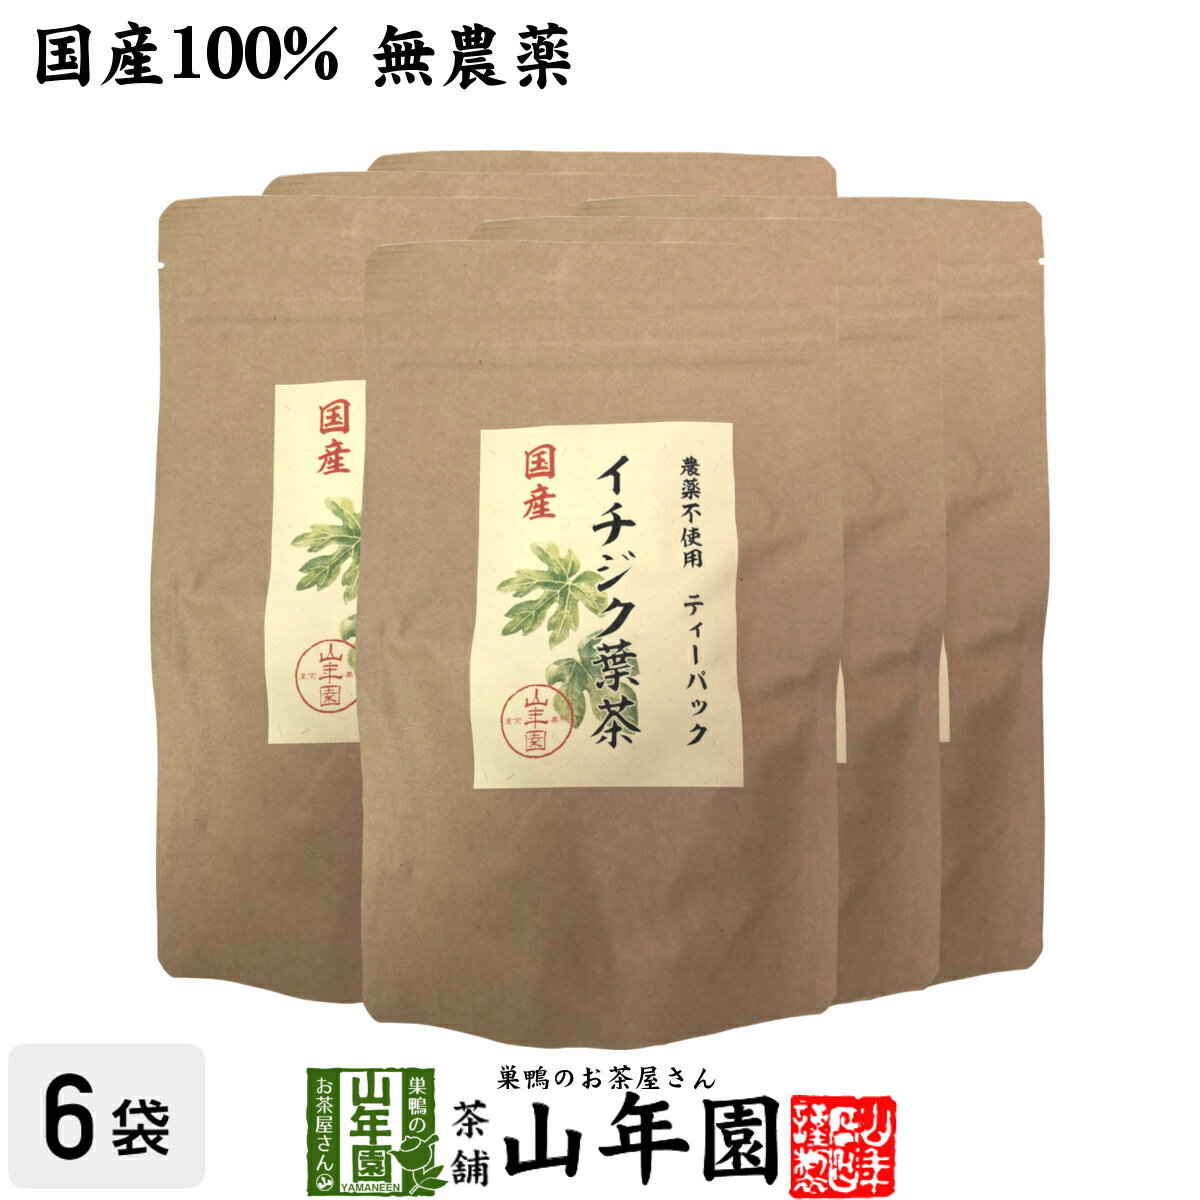 国産100% 無農薬 栃木県産 イチジク葉茶 1.5g×15